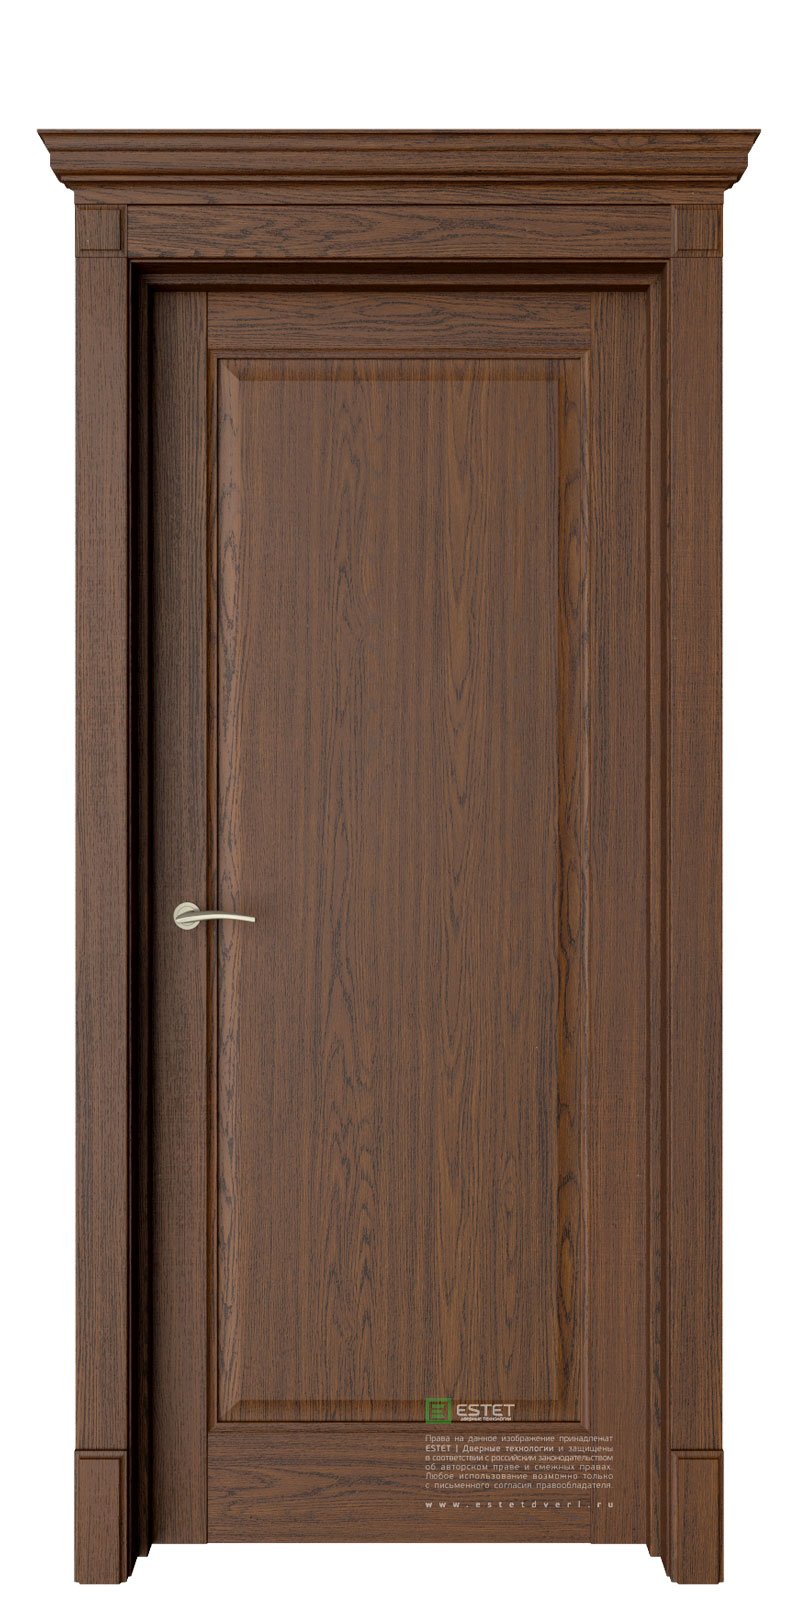 Эстет двери модель Соната 1